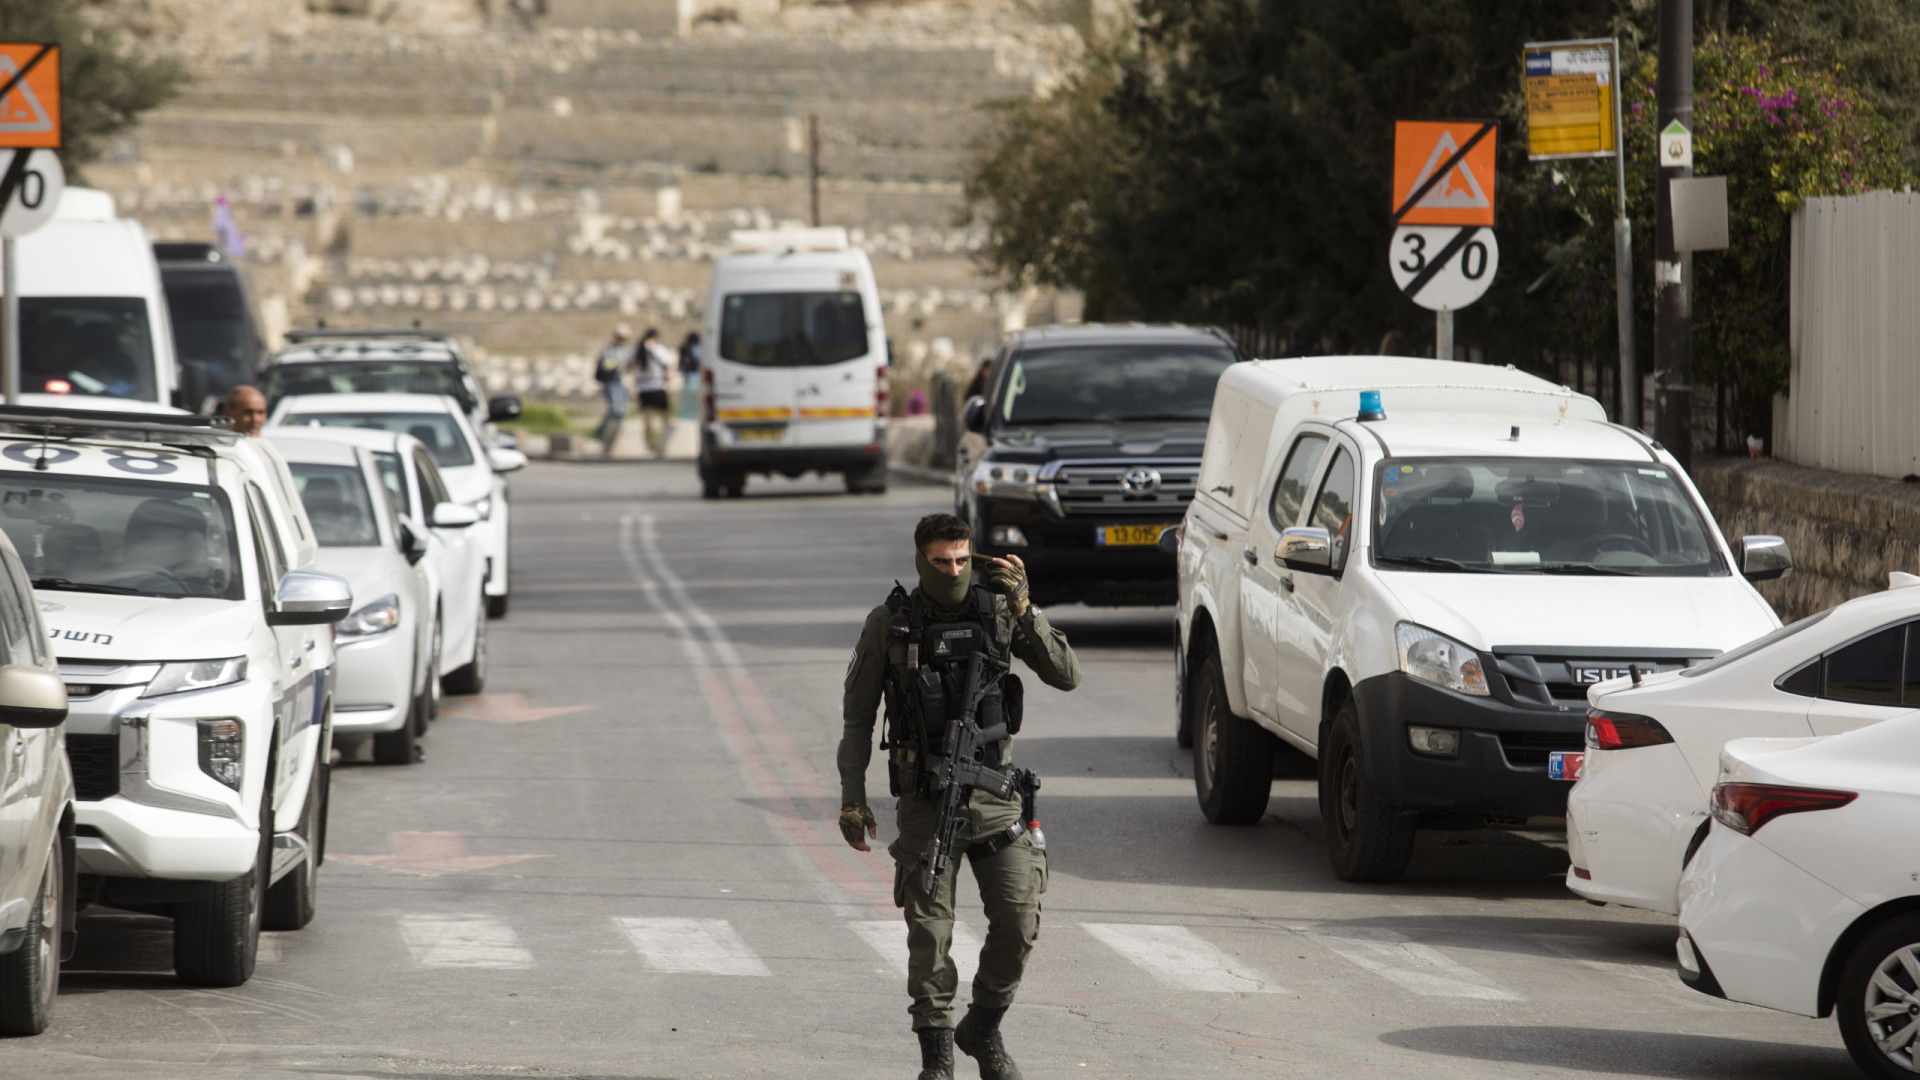 Ataque a tiros deixa mais 2 feridos em Israel, e cresce temor de escalada de conflito